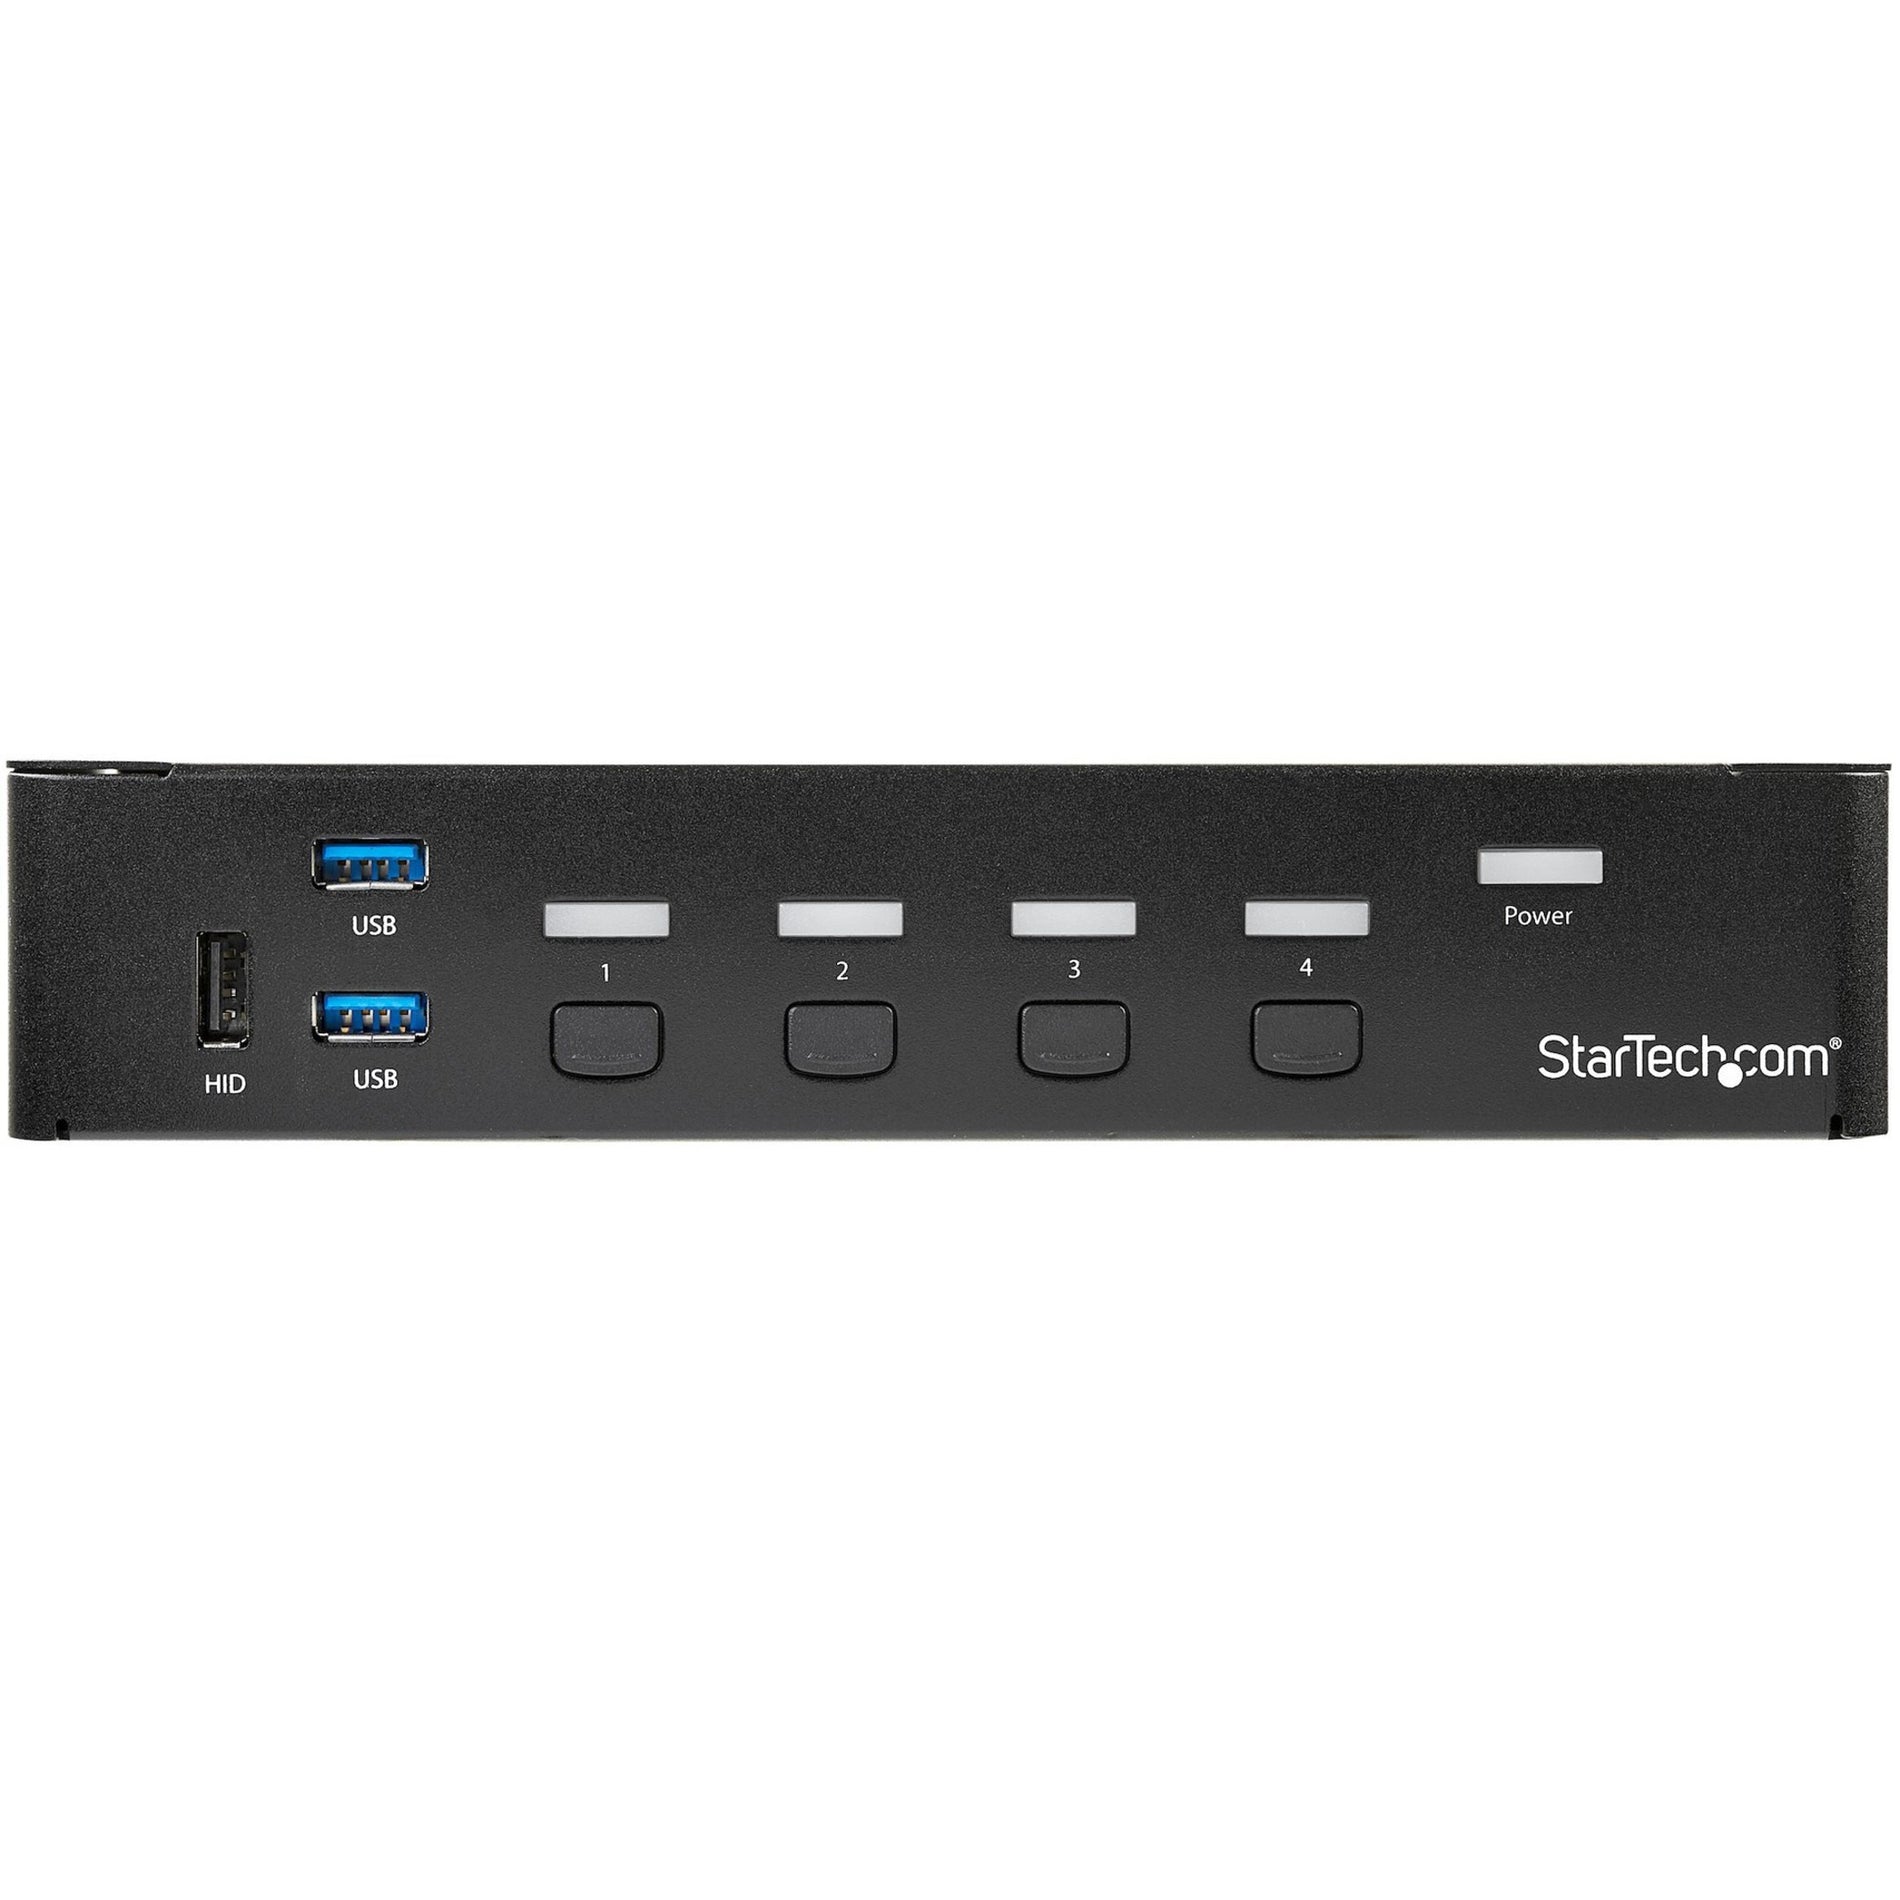 StarTech.com SV431DPU3A2 4-Port DisplayPort KVM Switch - USB 3.0 - 4K, Built-in USB 3.0 Hub for Peripherals